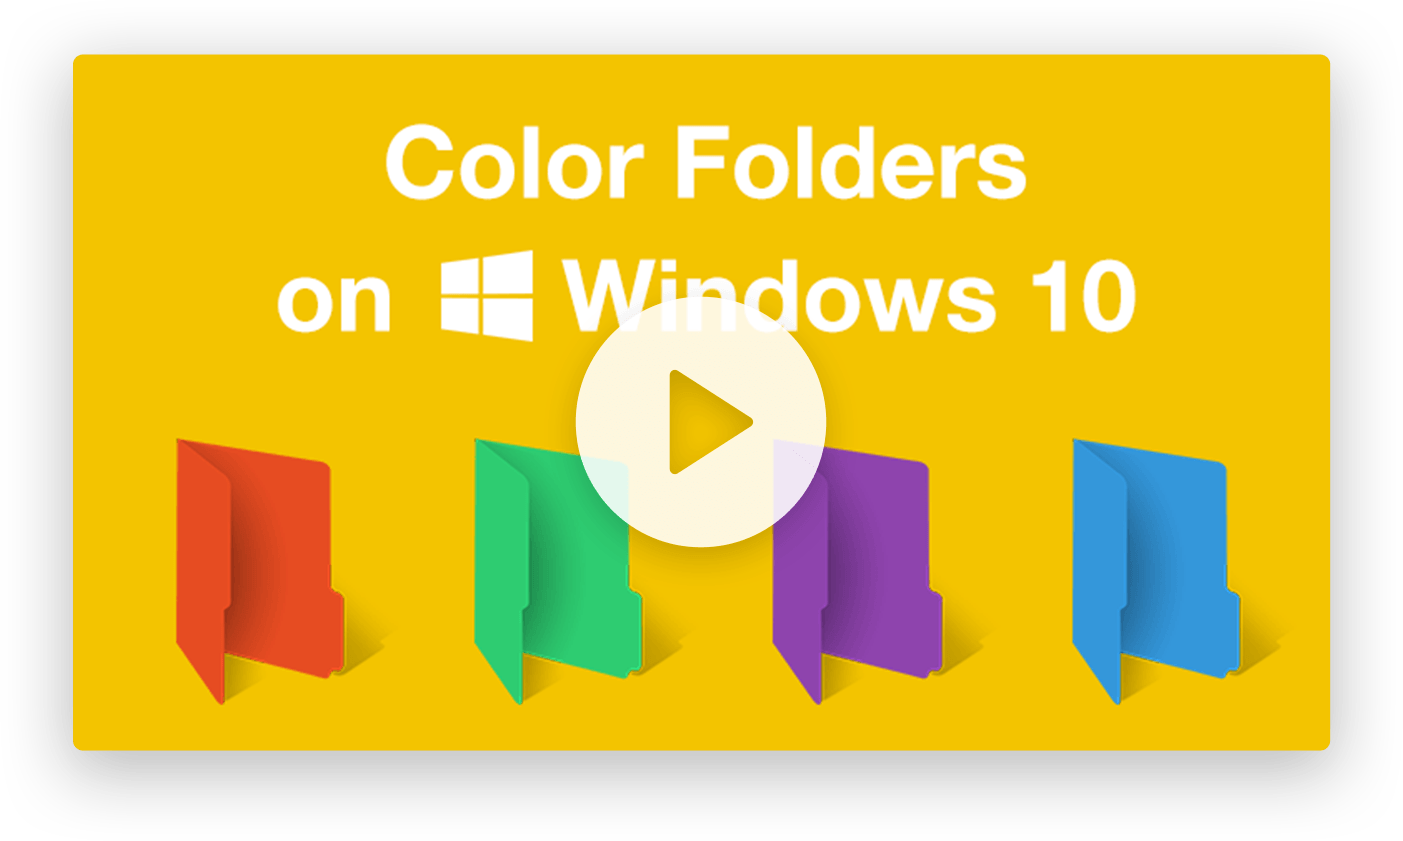 instaling Folder Colorizer